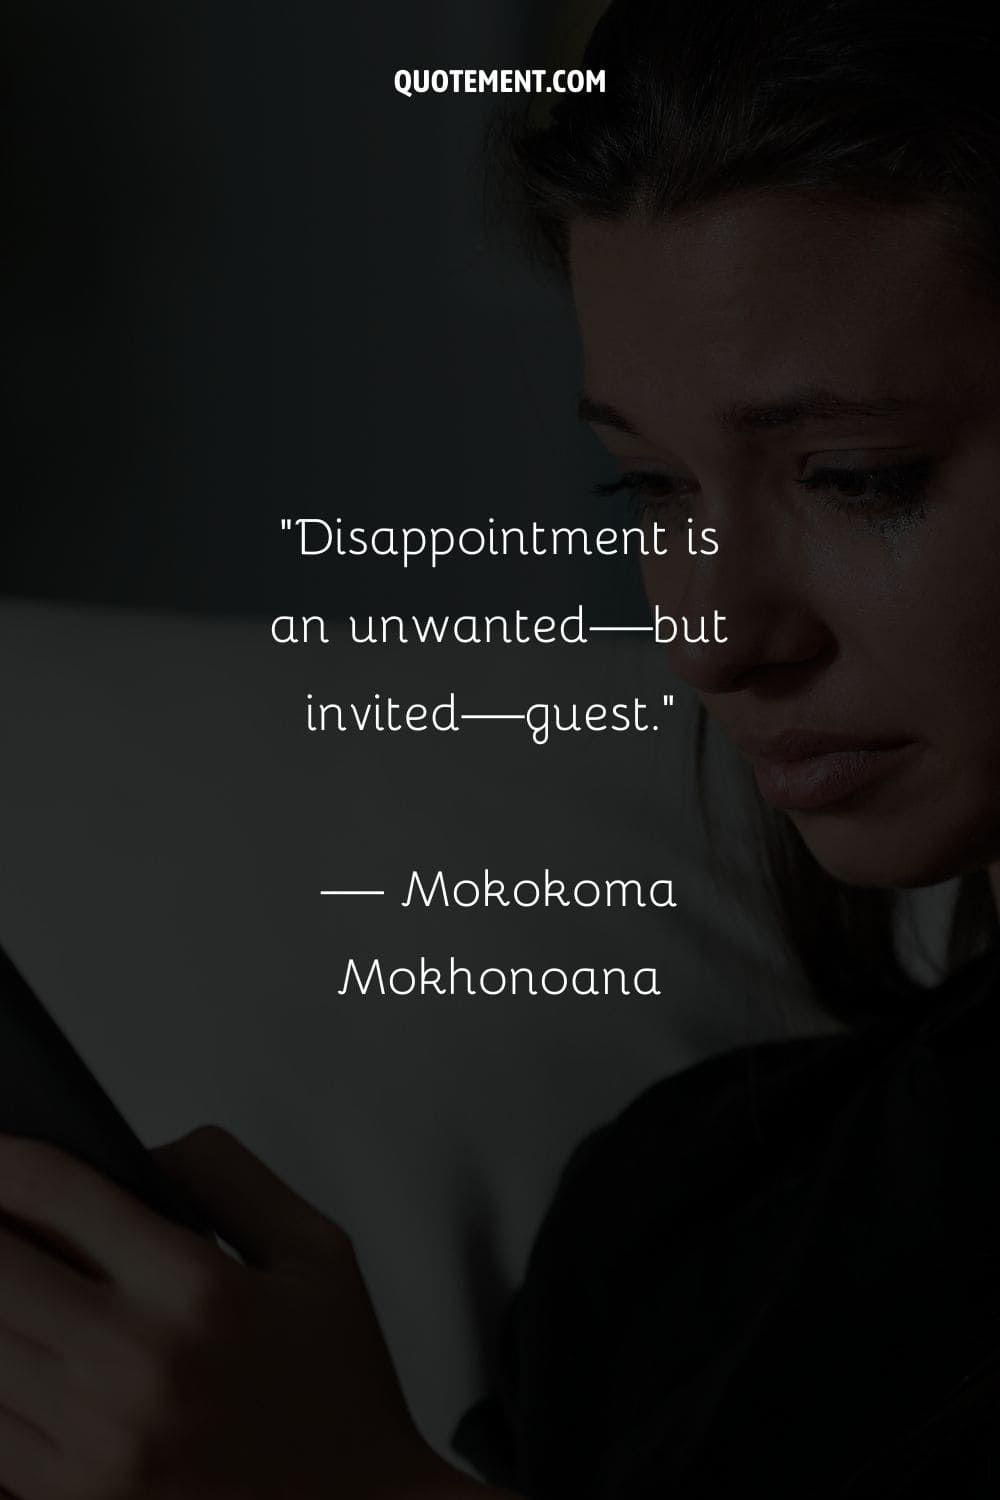 La decepción es un invitado no deseado